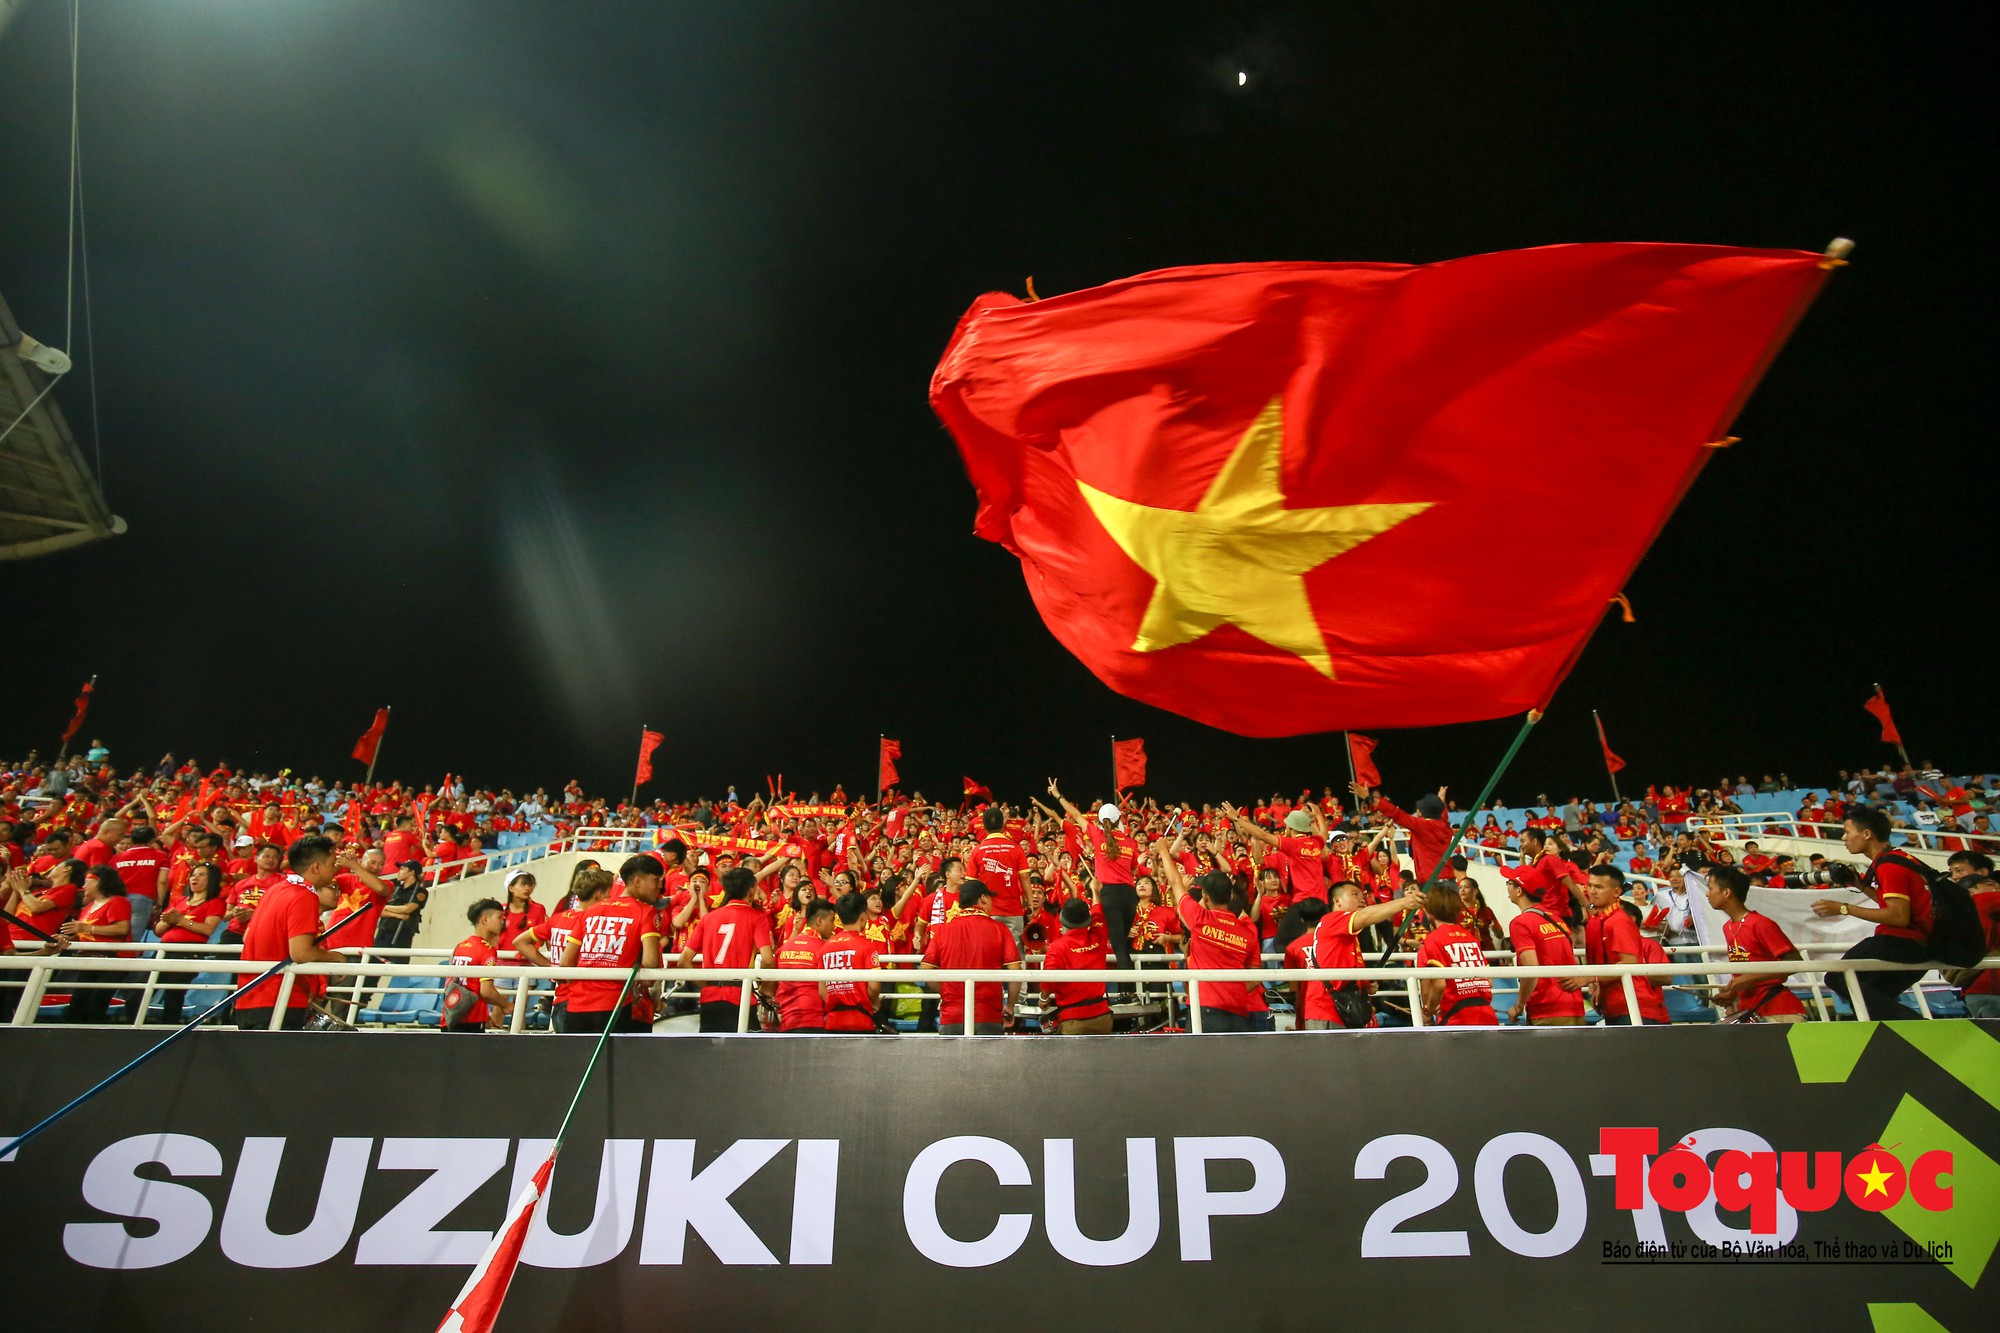 AFF Cup 2018 là giải đấu bóng đá quốc tế đáng chú ý nhất trên đất Việt. Tham gia vào giải đấu này, đội tuyển Việt Nam đã dành được vị trí thứ nhất chung cuộc. Hãy xem hình ảnh liên quan để cảm nhận lại niềm vui không thể nào quên trong những trận đấu đó.